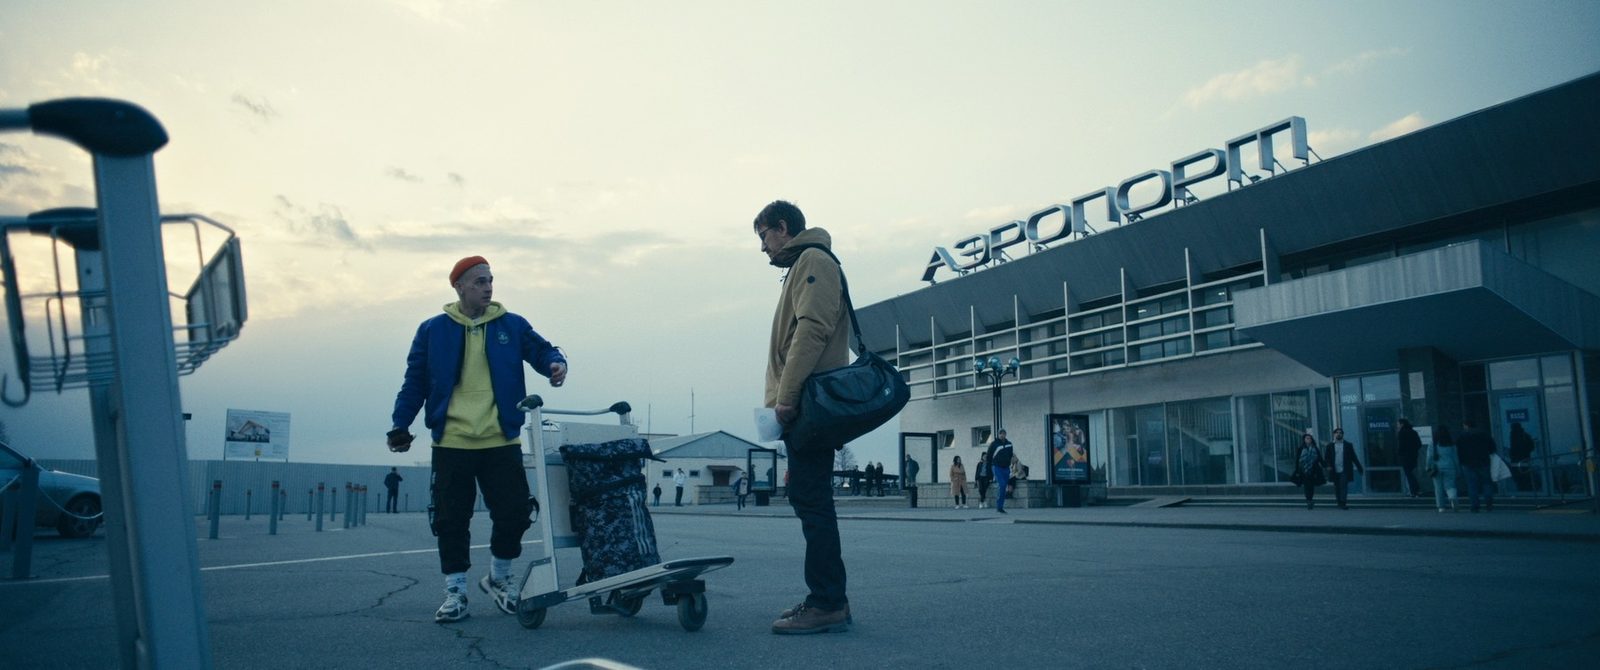 Кирилл Кяро и Павел Чернышев ведут стрим в Кавказских горах в трейлере фильма «Прямой эфир»